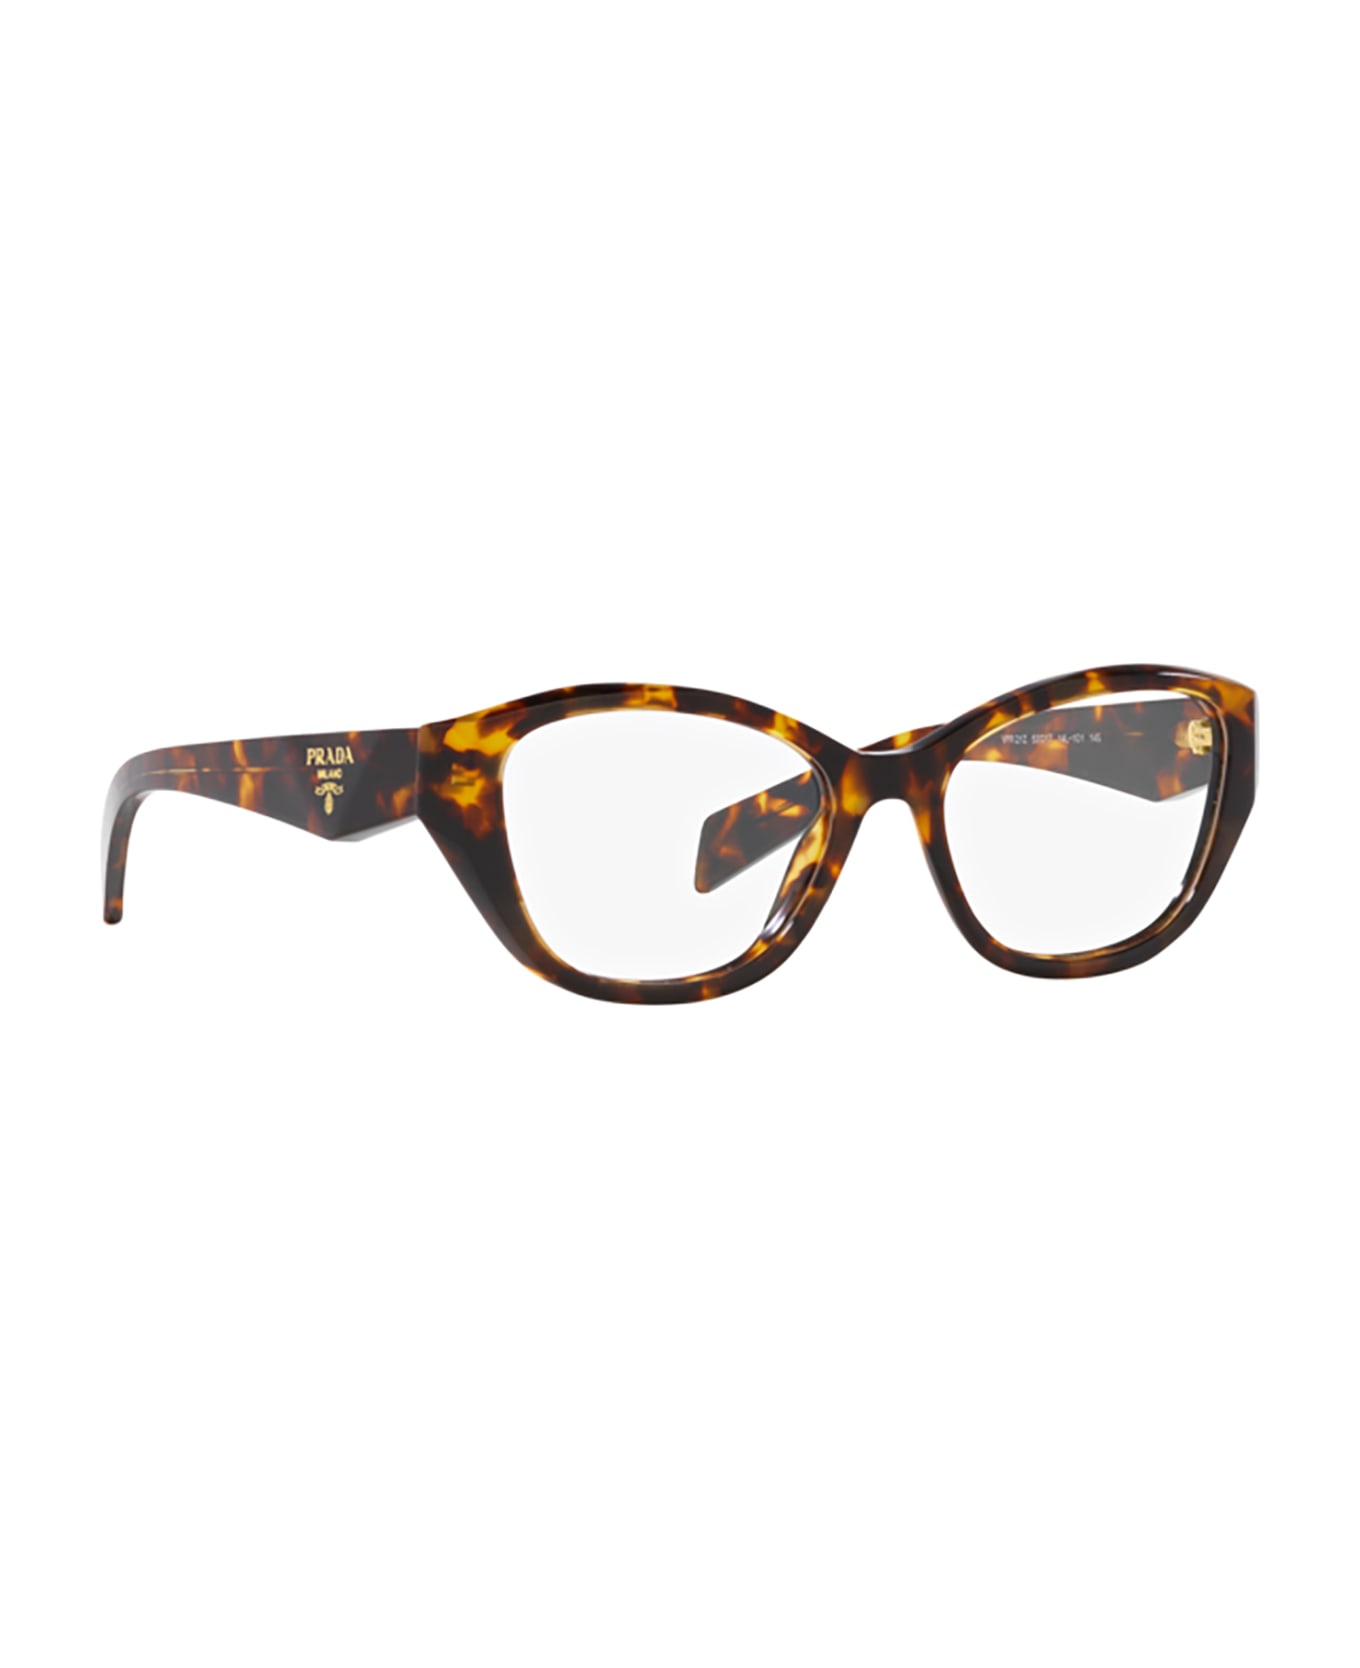 Prada Eyewear Pr 21zv Honey Tortoise Glasses - Honey Tortoise アイウェア